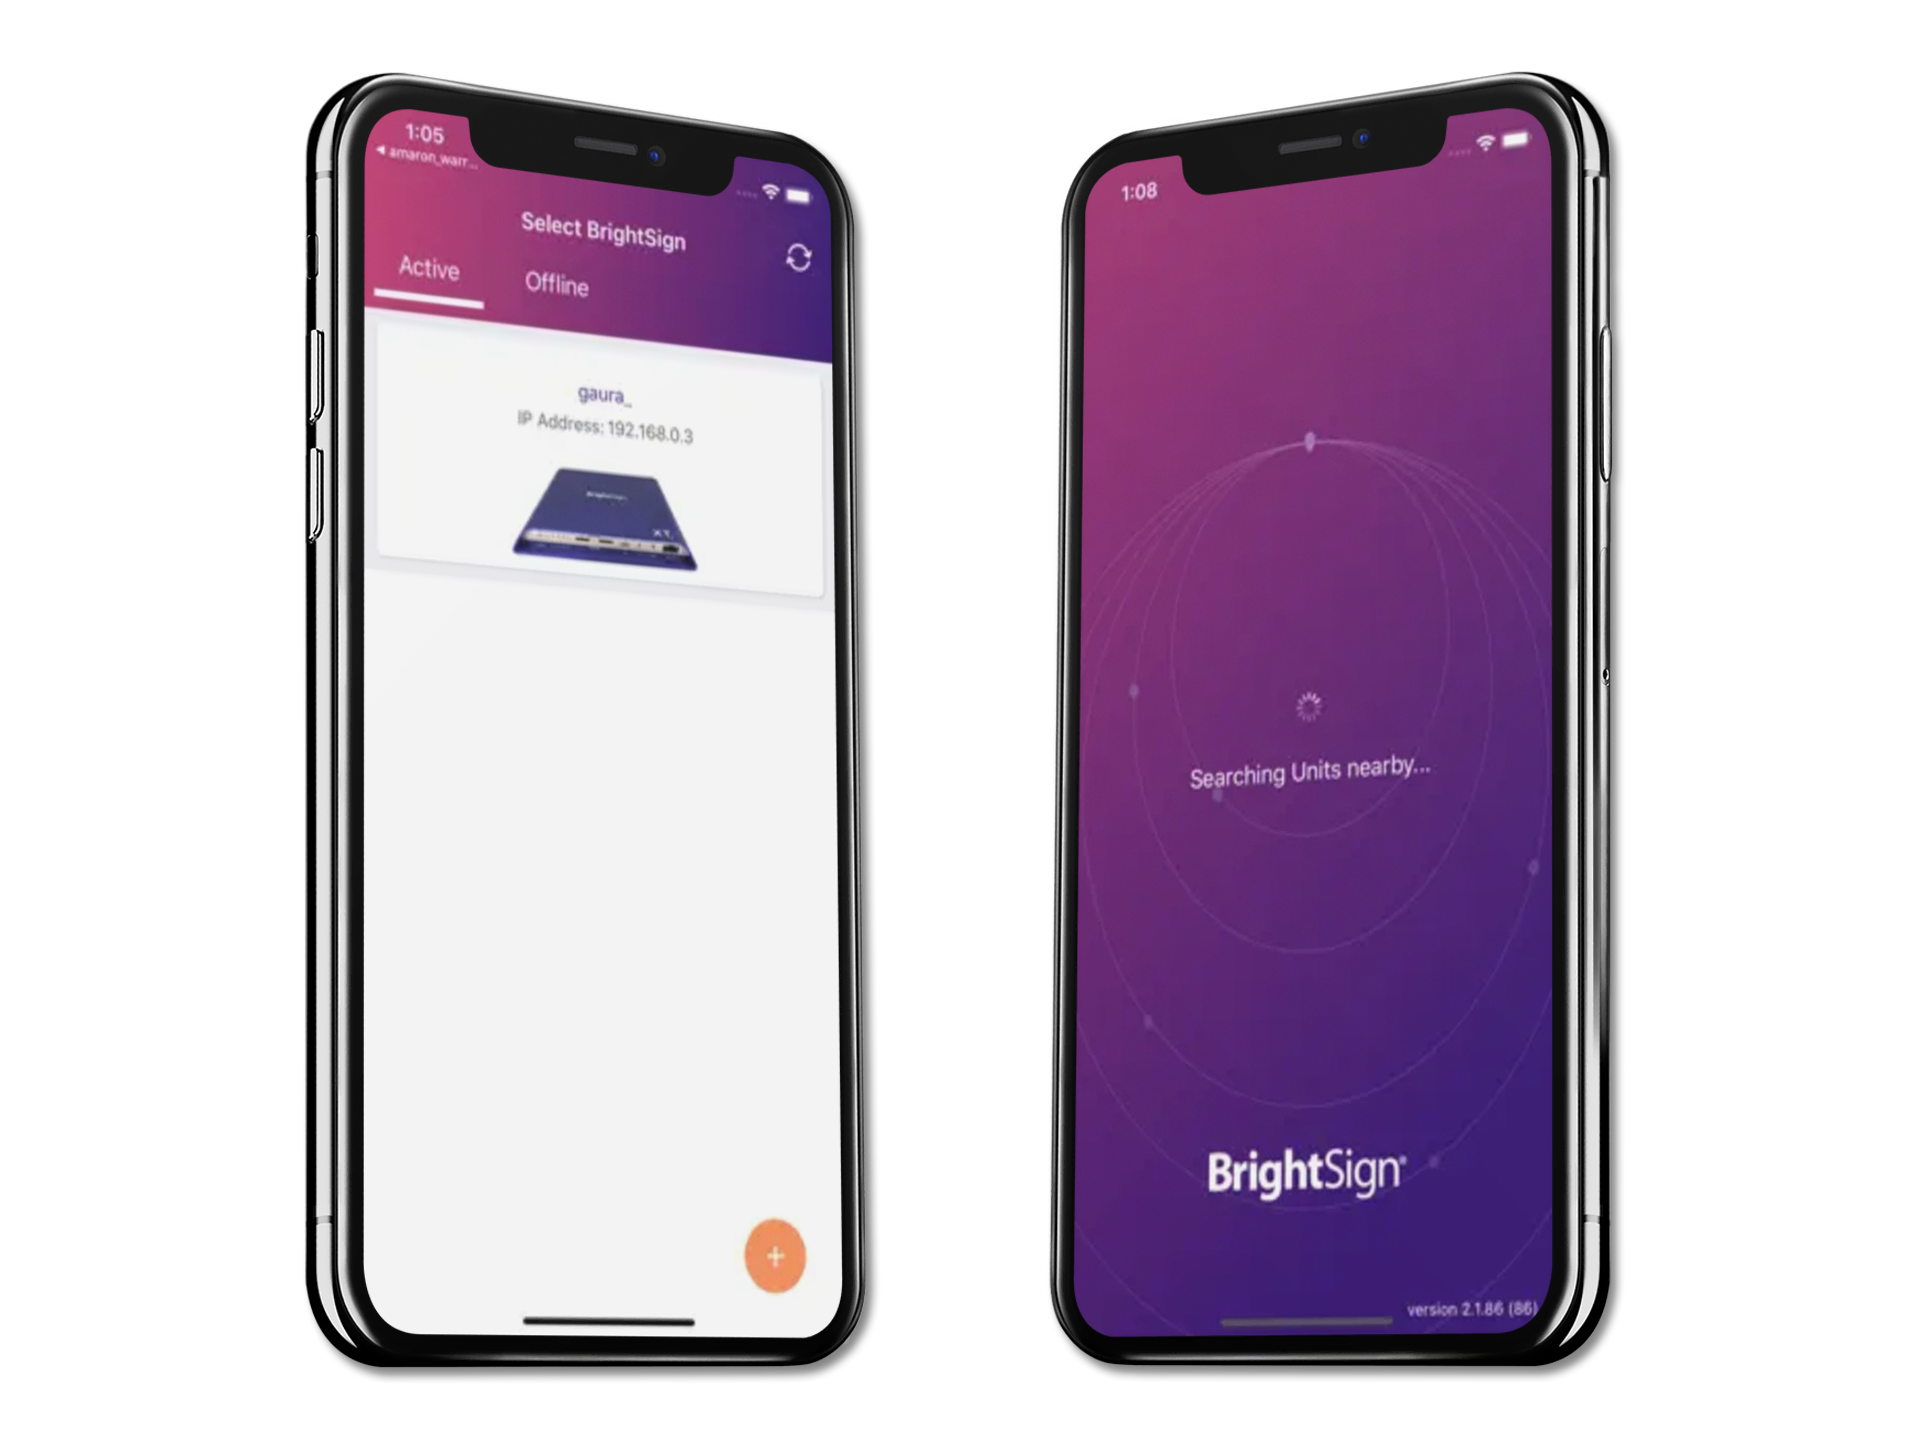 BrightSign-App wird auf zwei iPhone X-Telefonen angezeigt